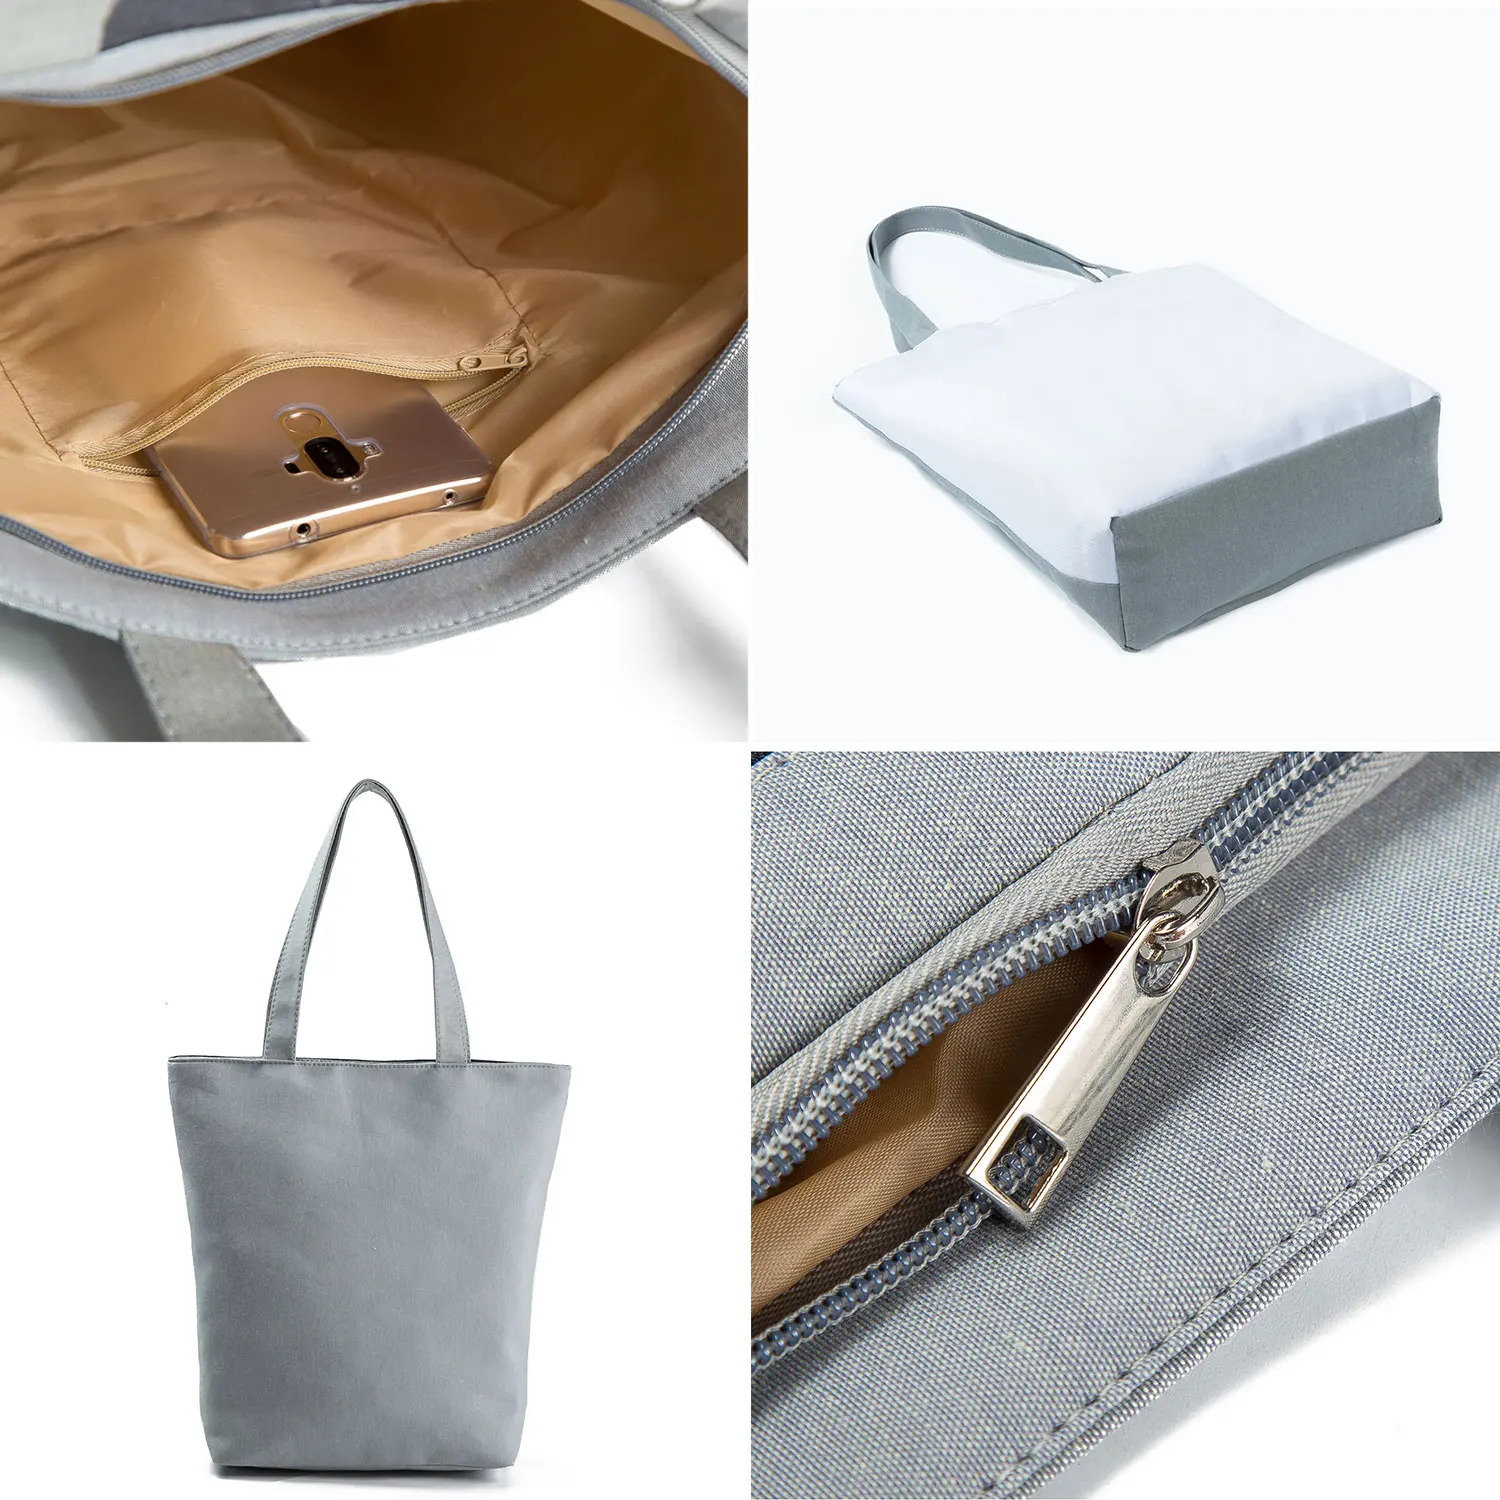 Disney Lilo Stitch Cartoon Printed Handbag Casual High Capacity Eco Reusable Shoppaing Bag Blue Girl Women Travel Beach Tote Bag